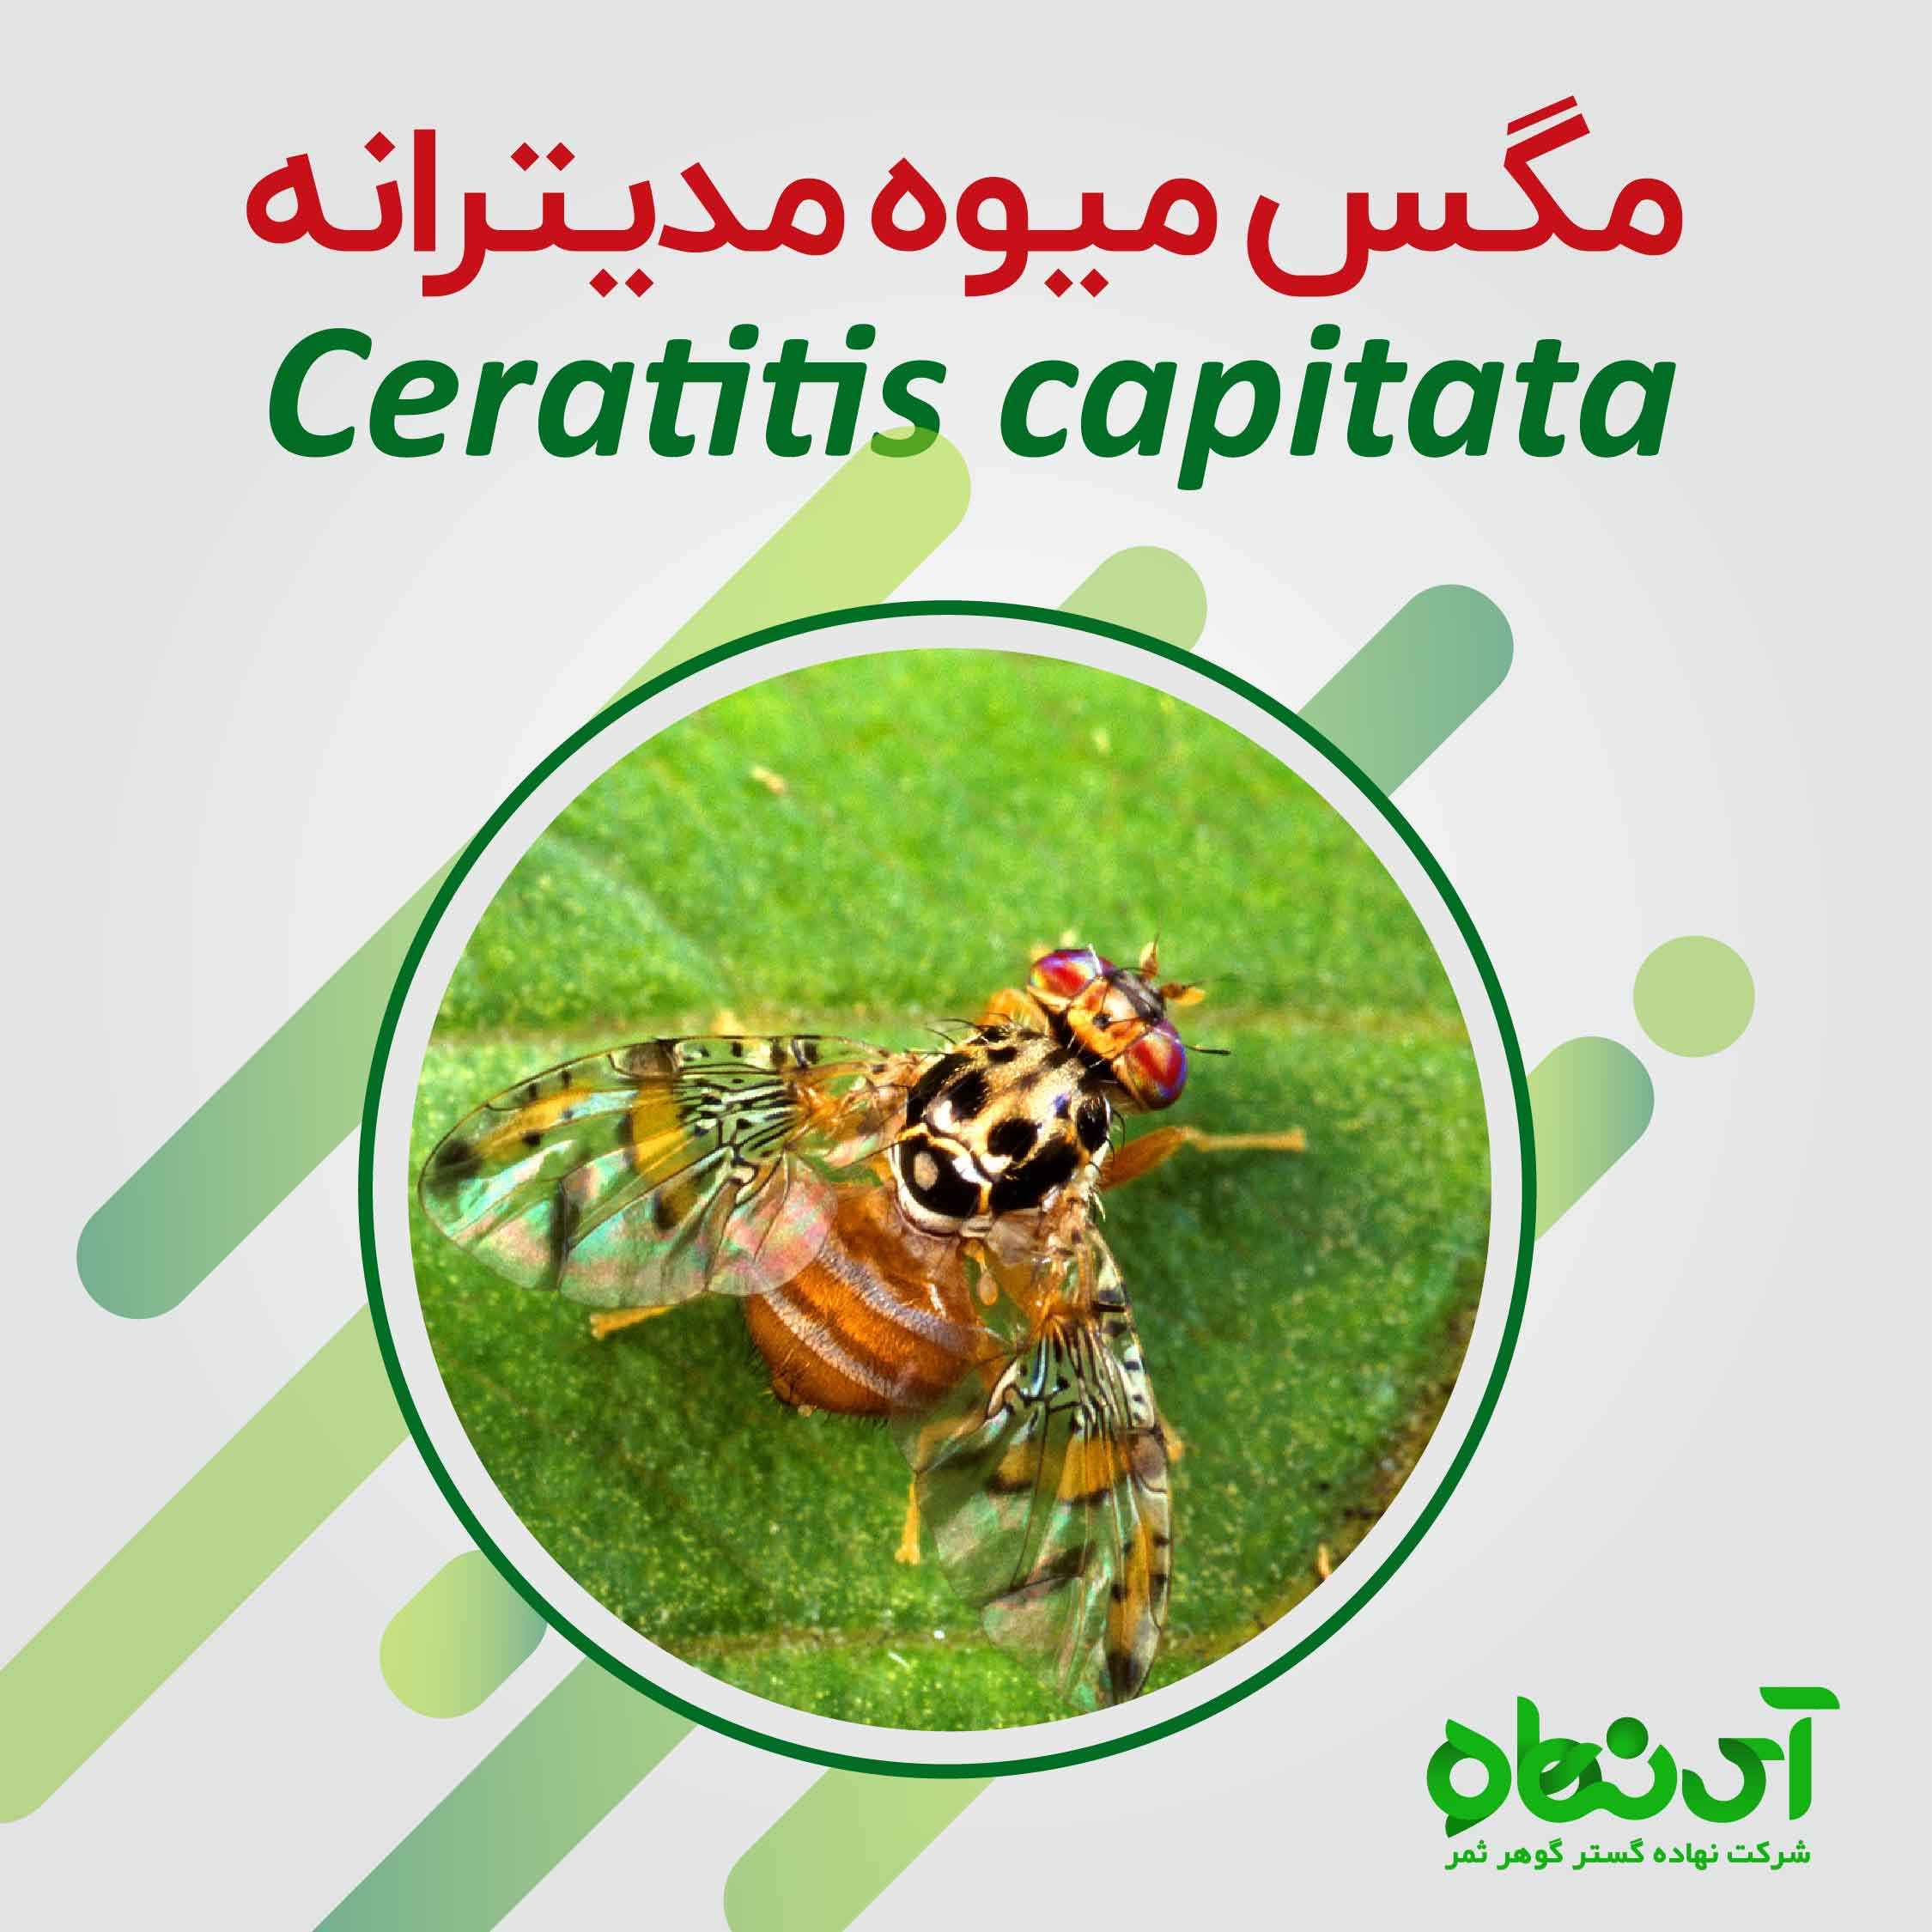 مگس میوه مدیترانه  Ceratitis capitata